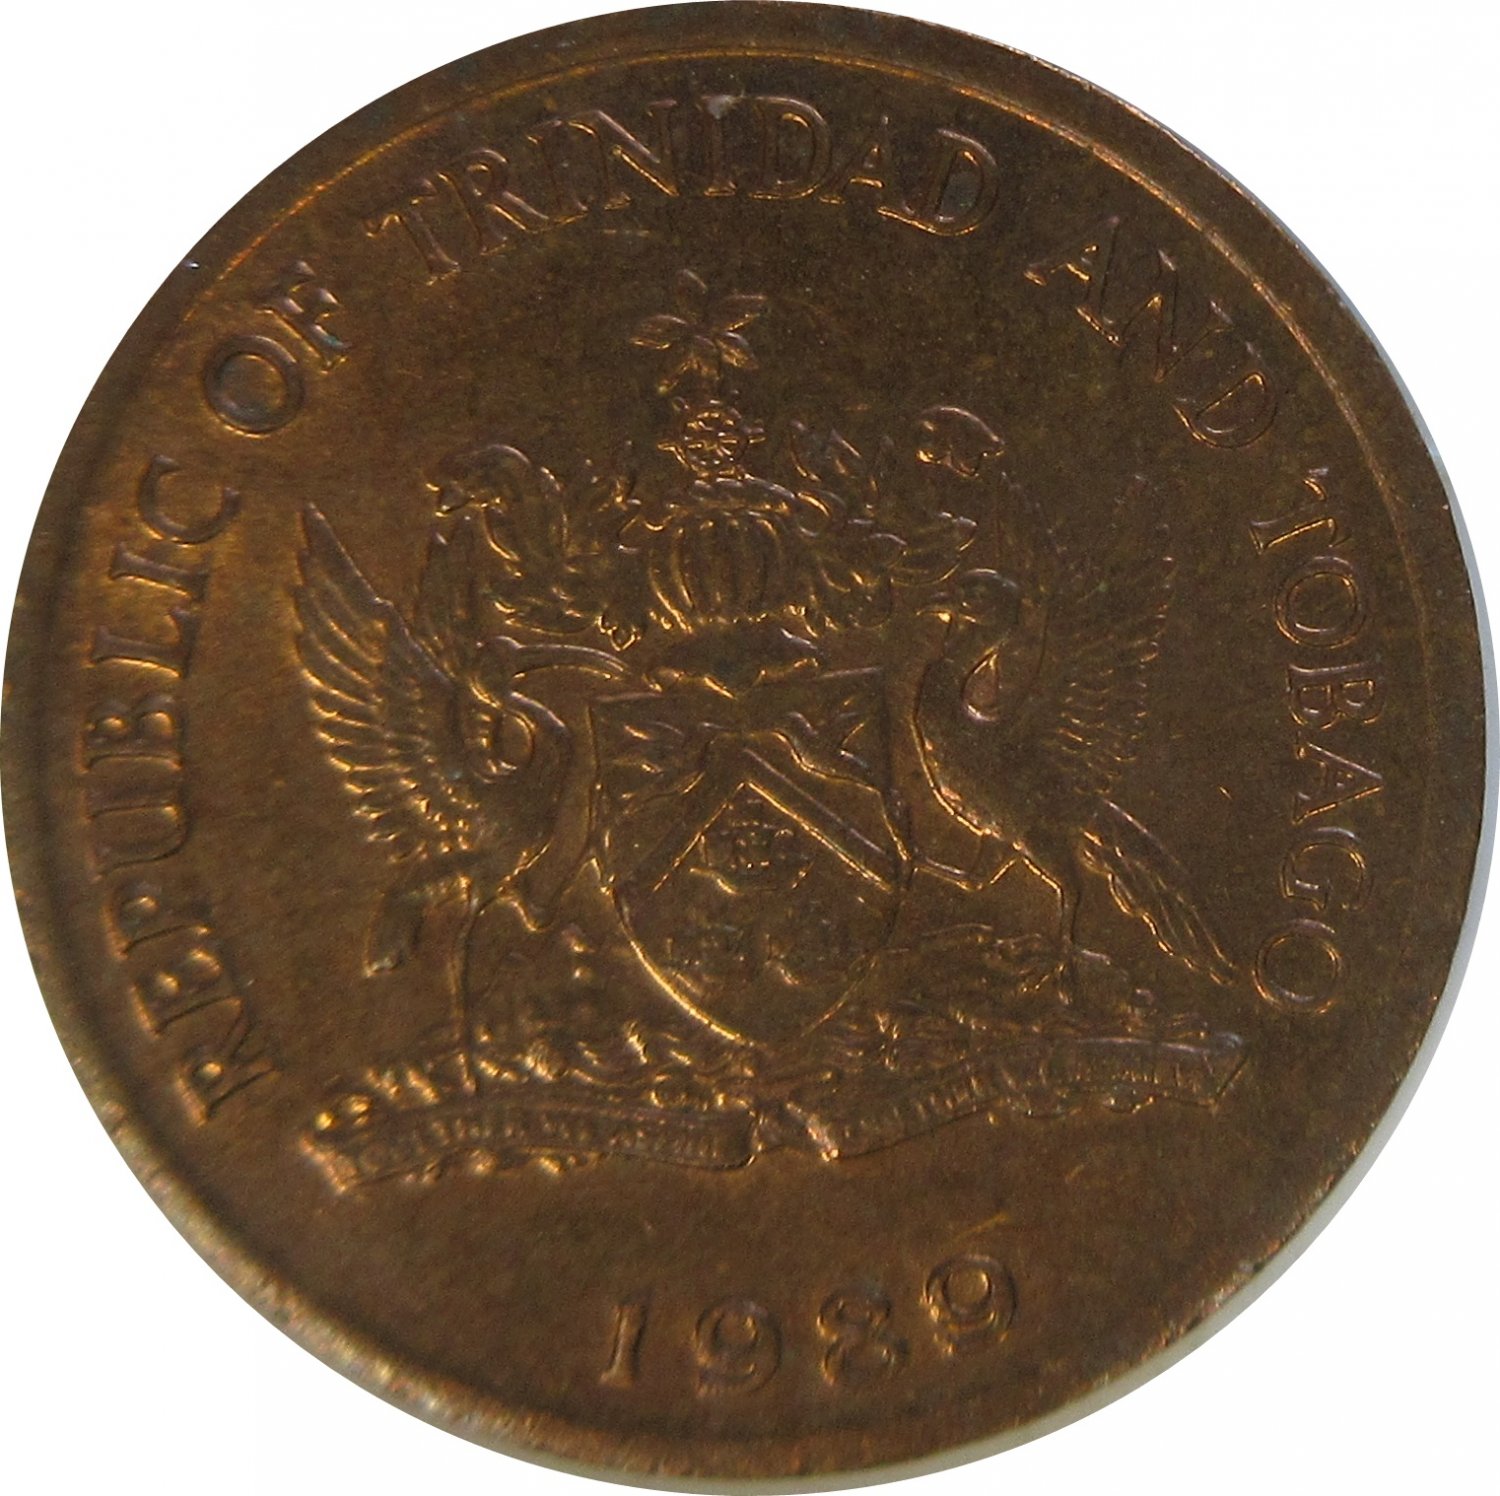 1989 Trinidad and Tobago 1 Cent